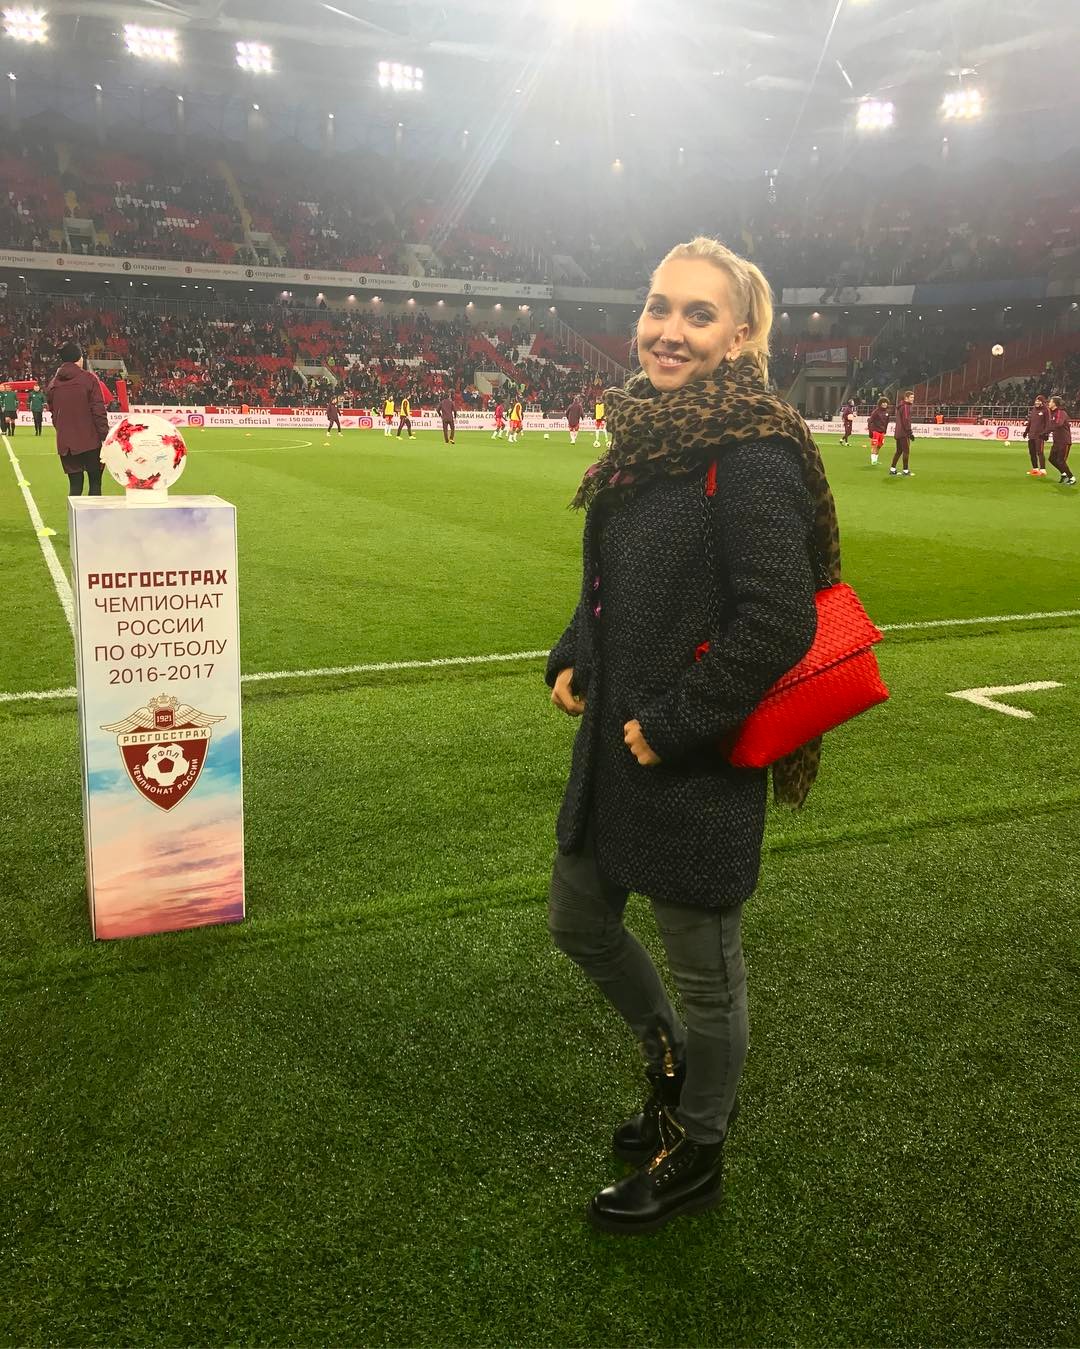 Елена Веснина сделала новую запись в Instagram